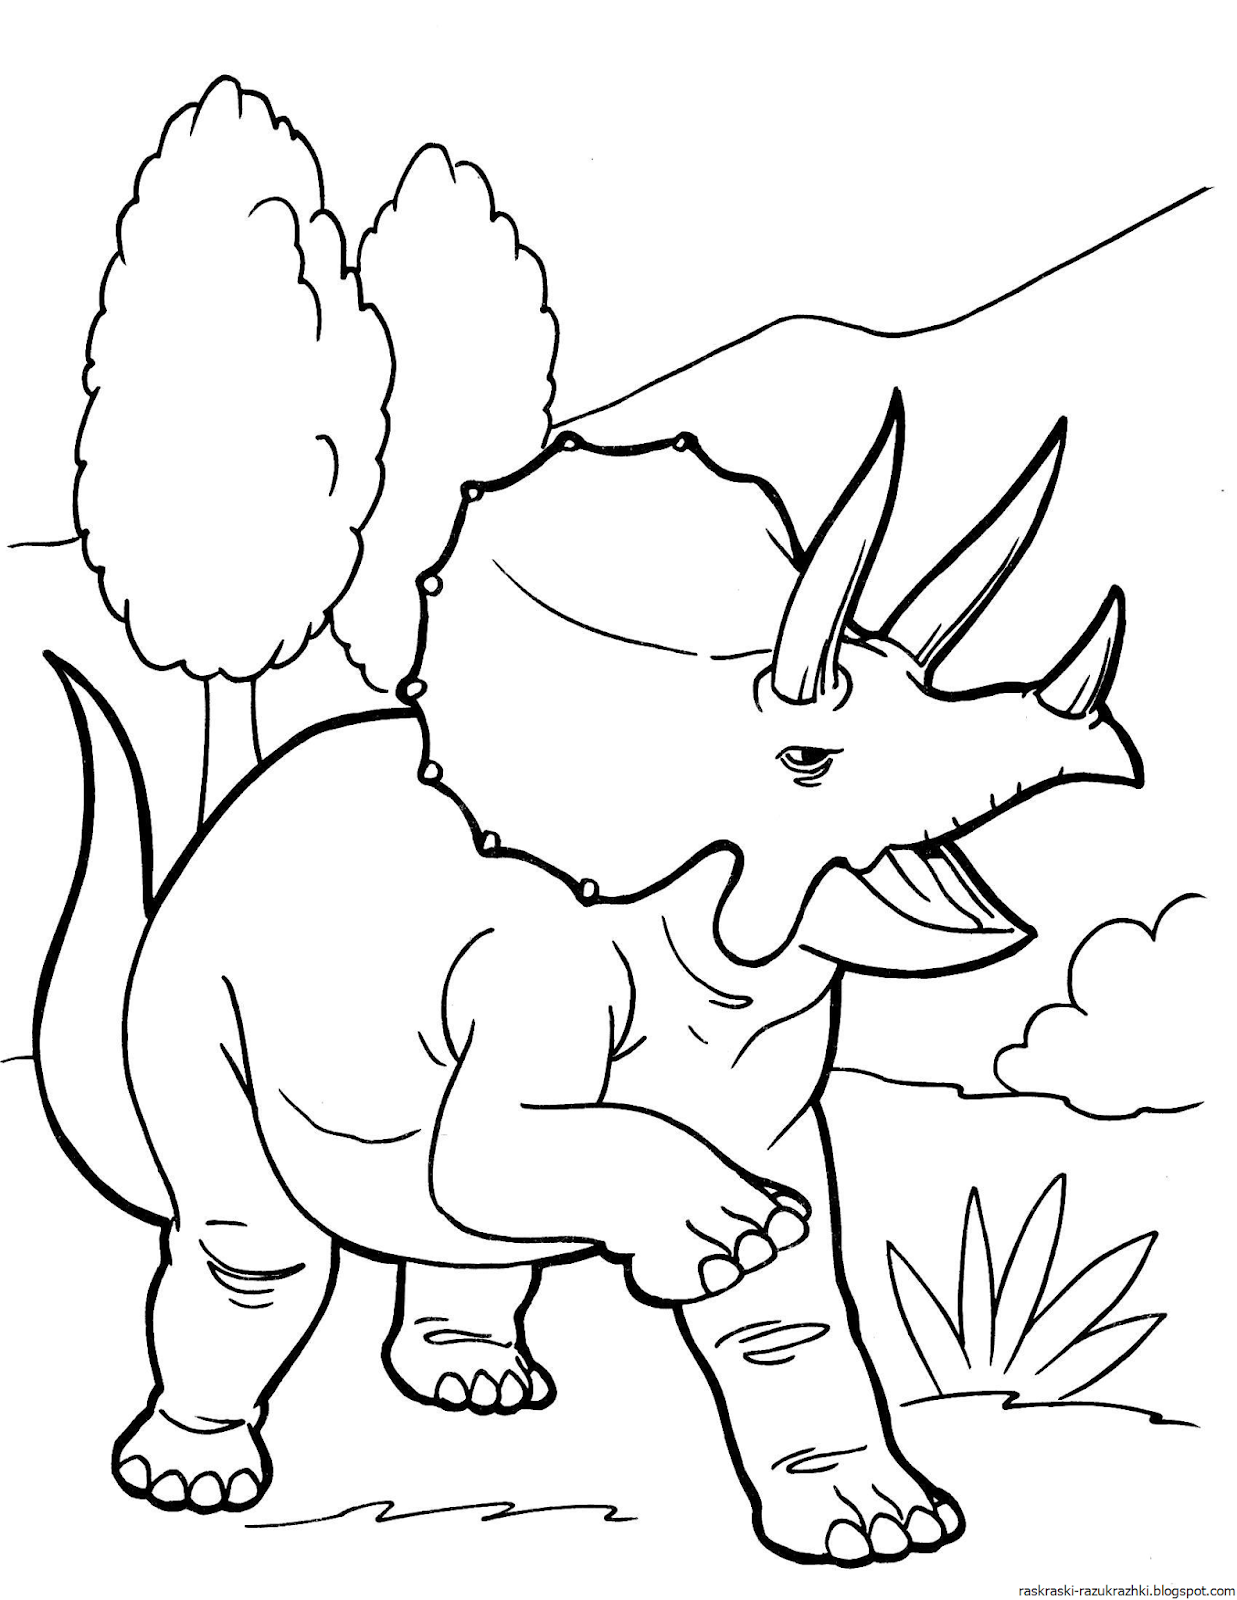 Раскраски динозавры формат а4. Динозавры / раскраска. Динозавр раскраска для детей. Раскраски для мальчиков динозавры. Динозаврики раскраска для детей.